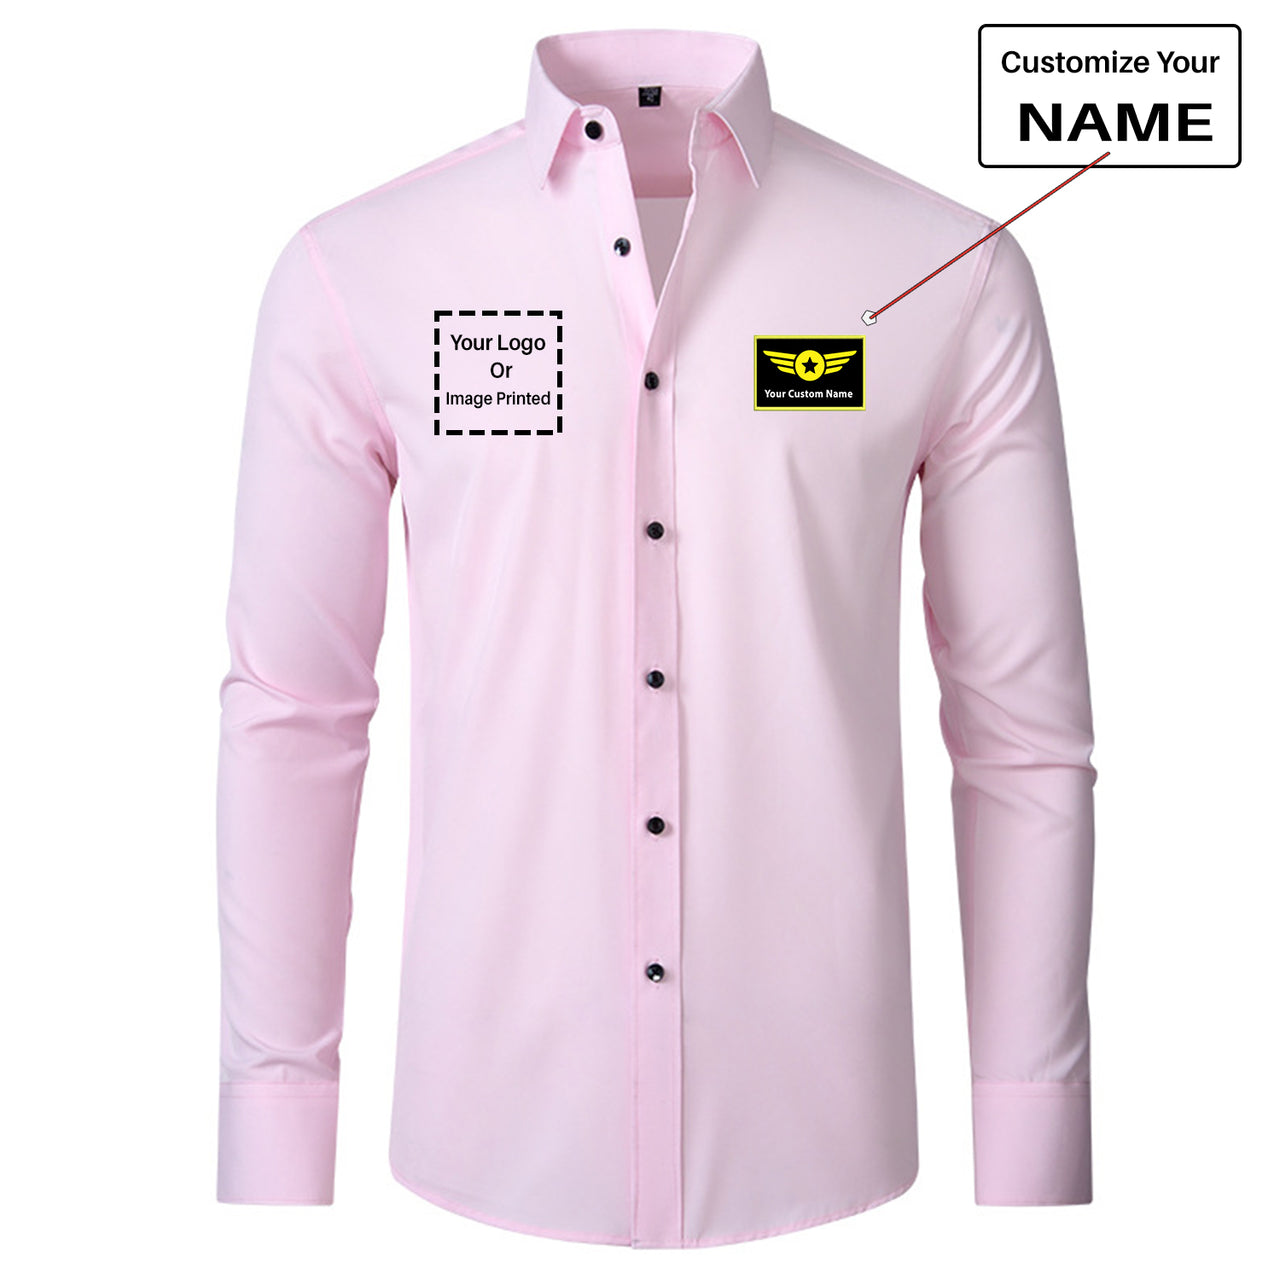 Custom Name & LOGO Designed Long Sleeve Shirts